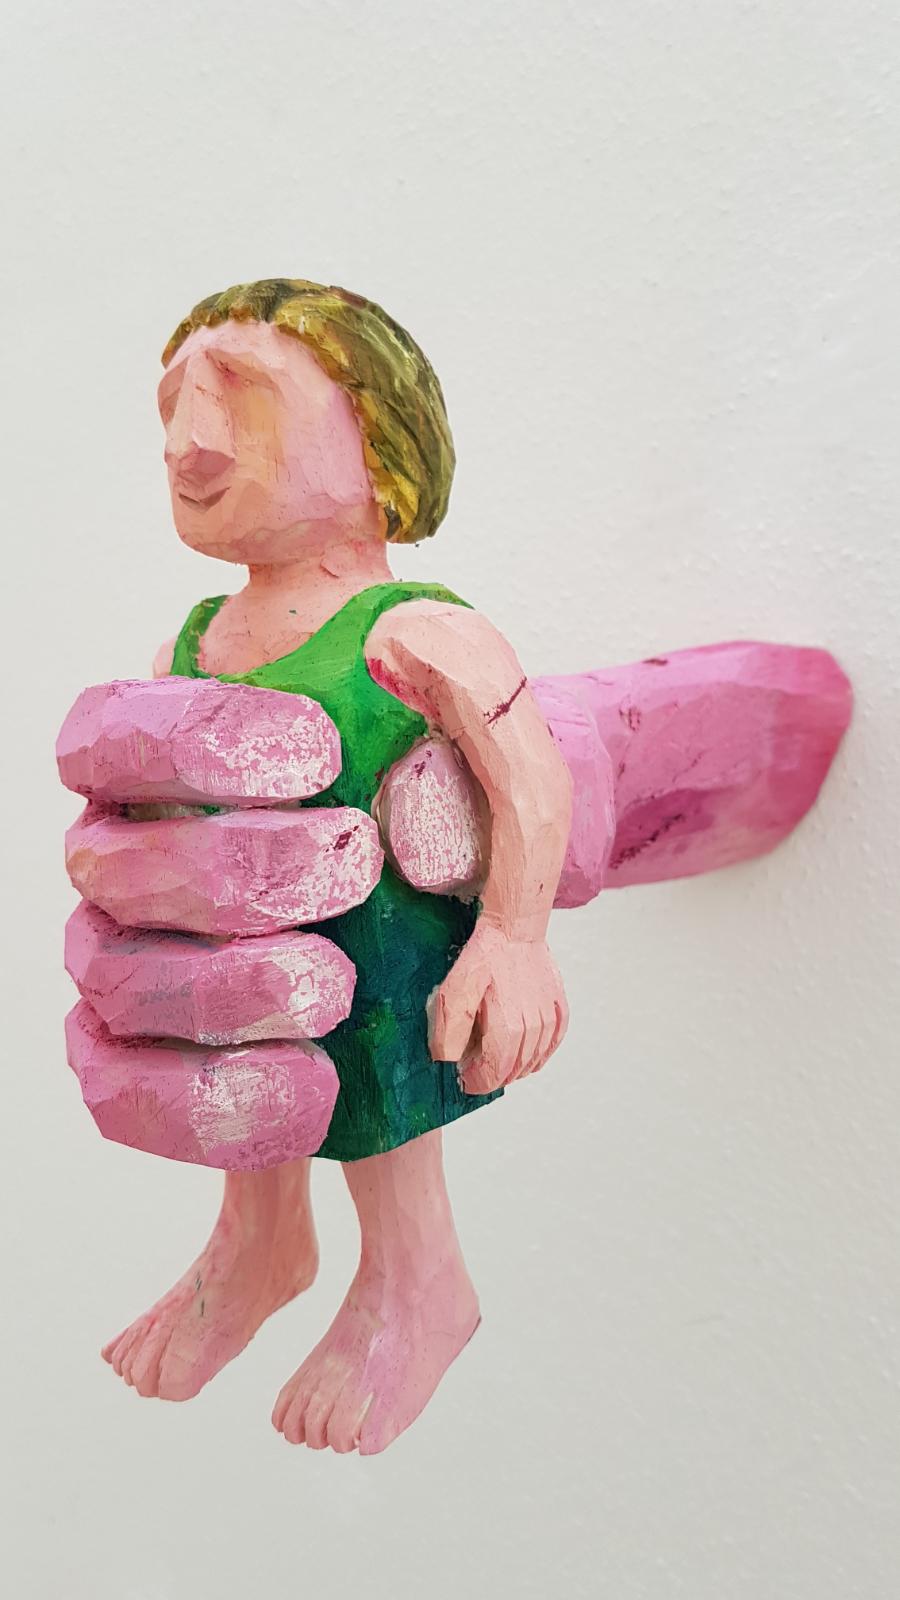 Daniel Wagenblast, handfrau kleidchen, 2020, Holz bemalt, 22 x 28 x 10 cm, Preis auf Anfrage, Galerie Cyprian Brenner